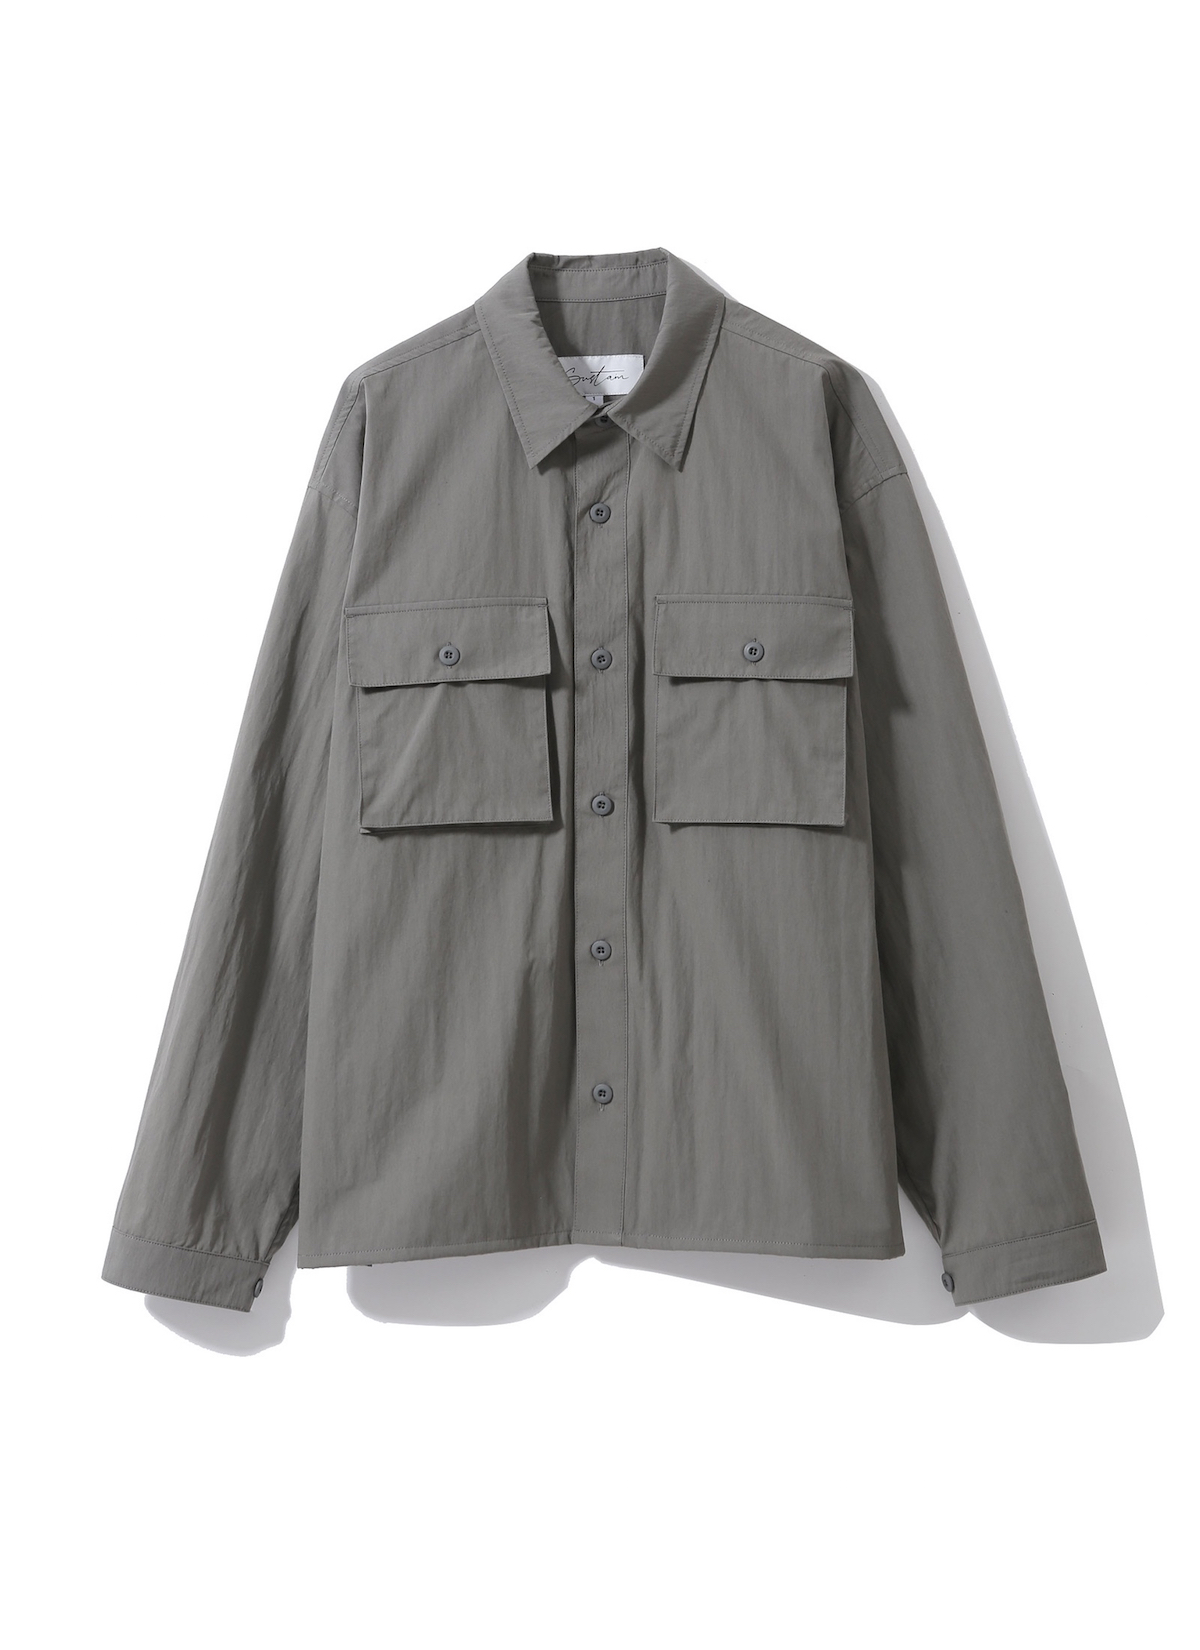 4PK Shirt Jacket Olive Grey